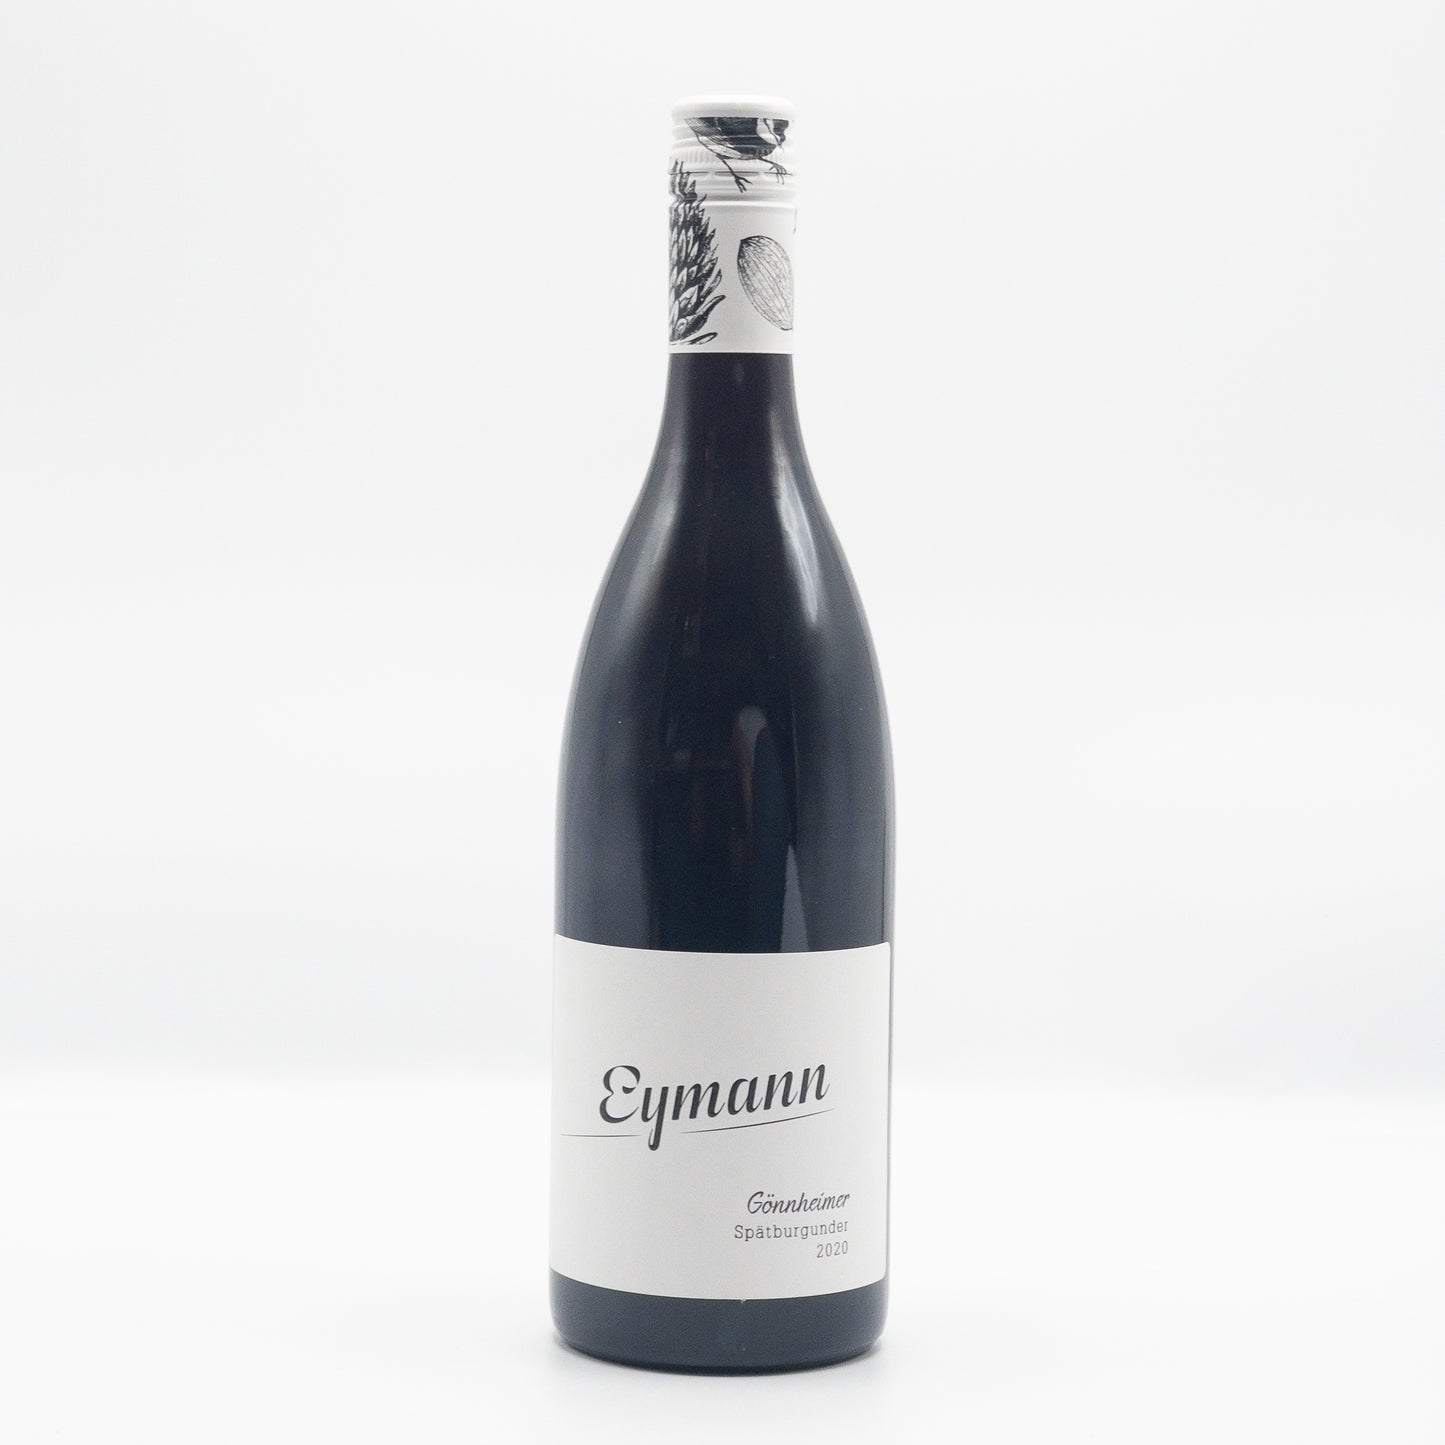 Eymann Pinot Noir / Spatburgunder, Eymann